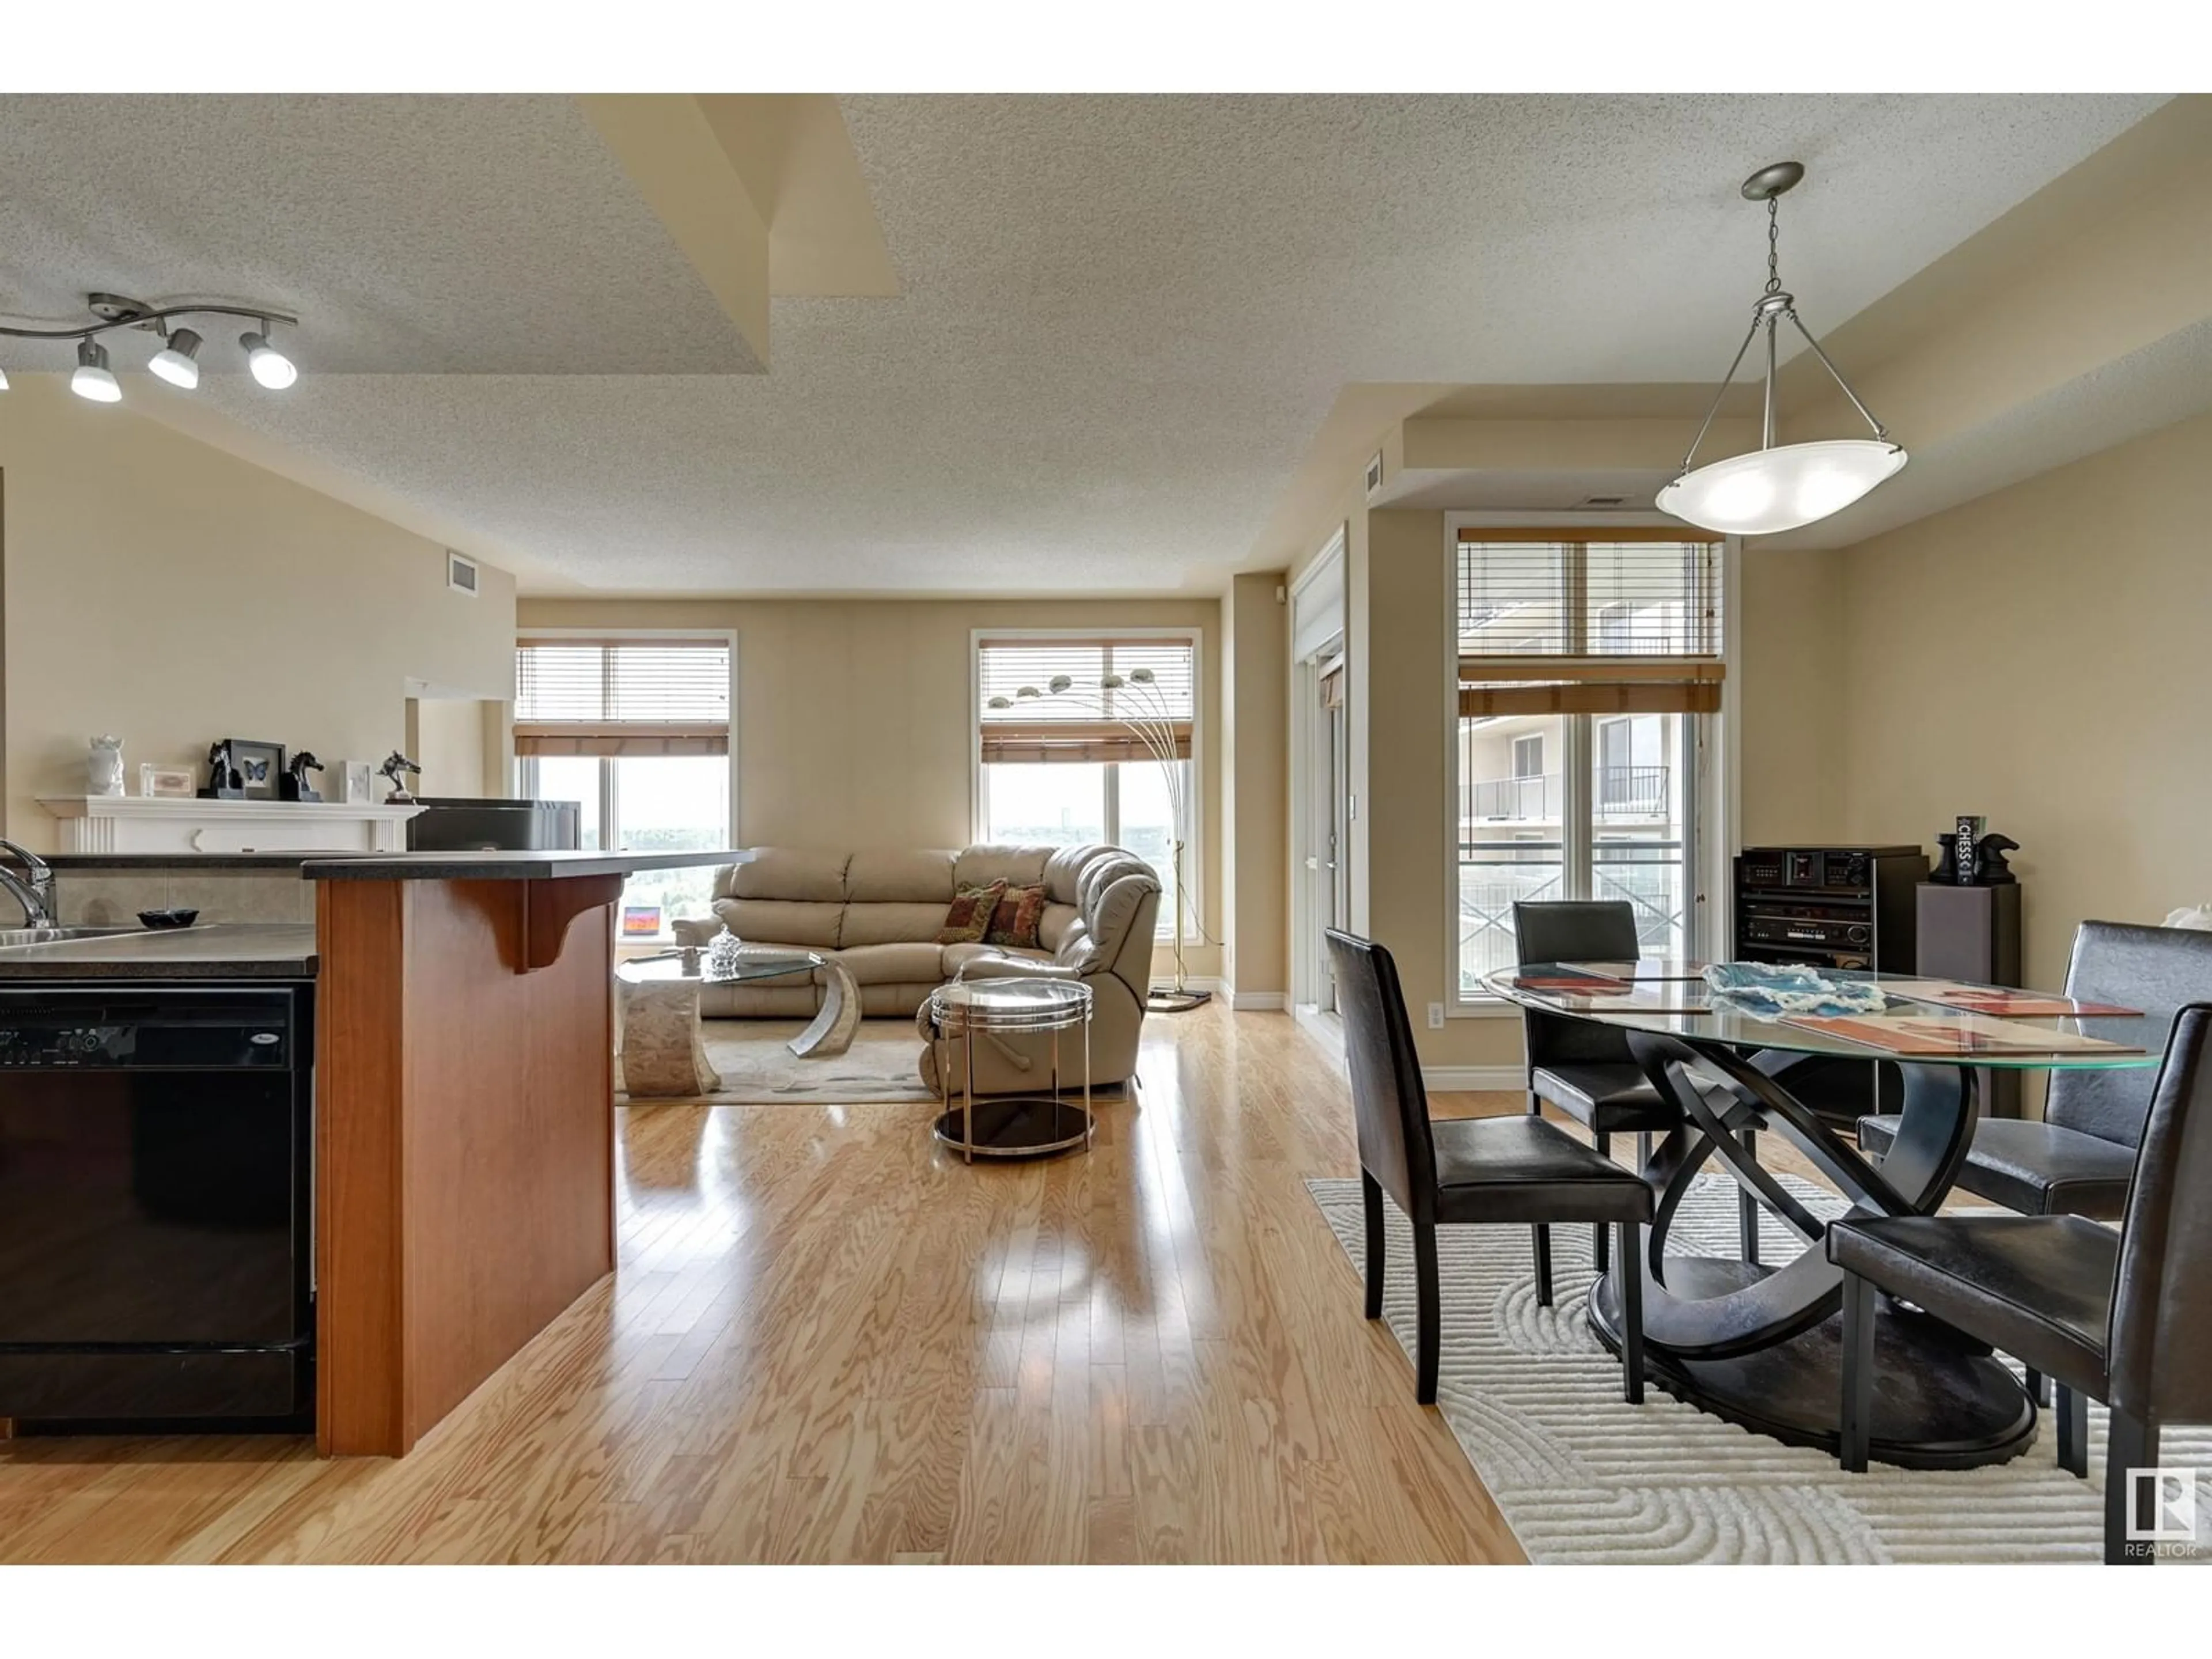 Living room for #607 9020 Jasper AV NW, Edmonton Alberta T5H3S8